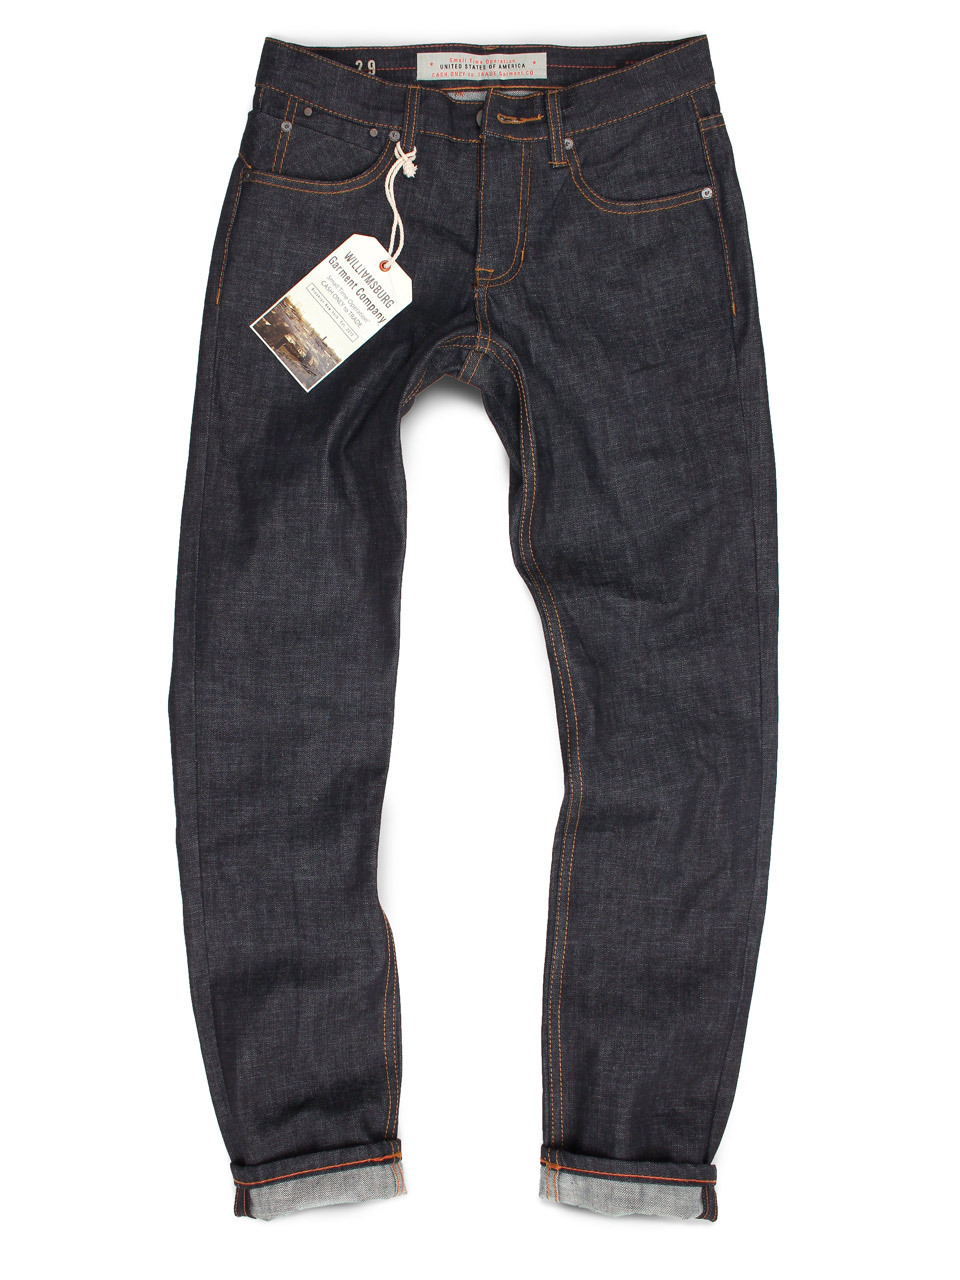 mens-indigo-jeans-0611-2